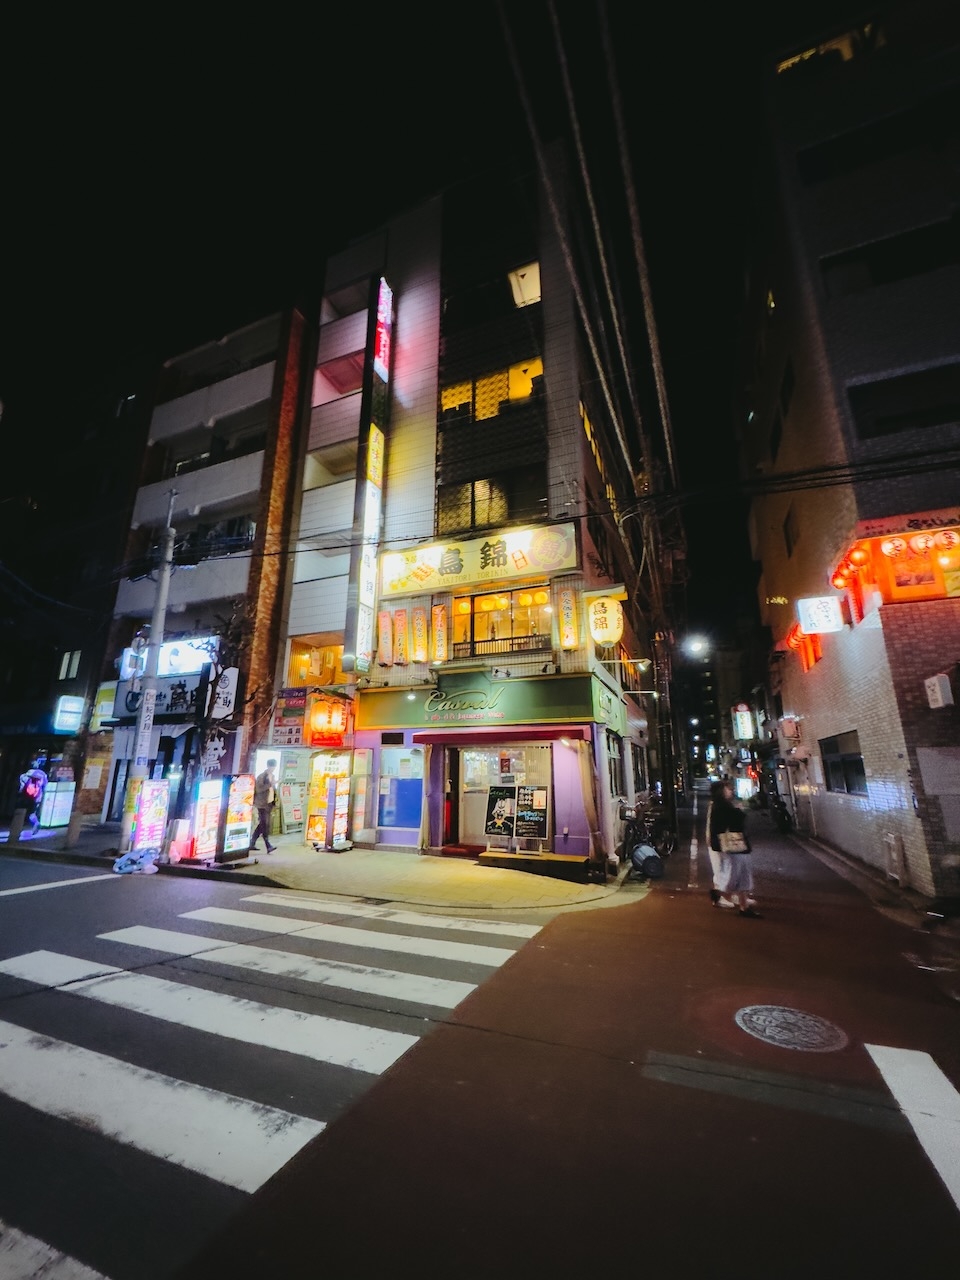 Late Night Neighborhood Photo in
Itabashi